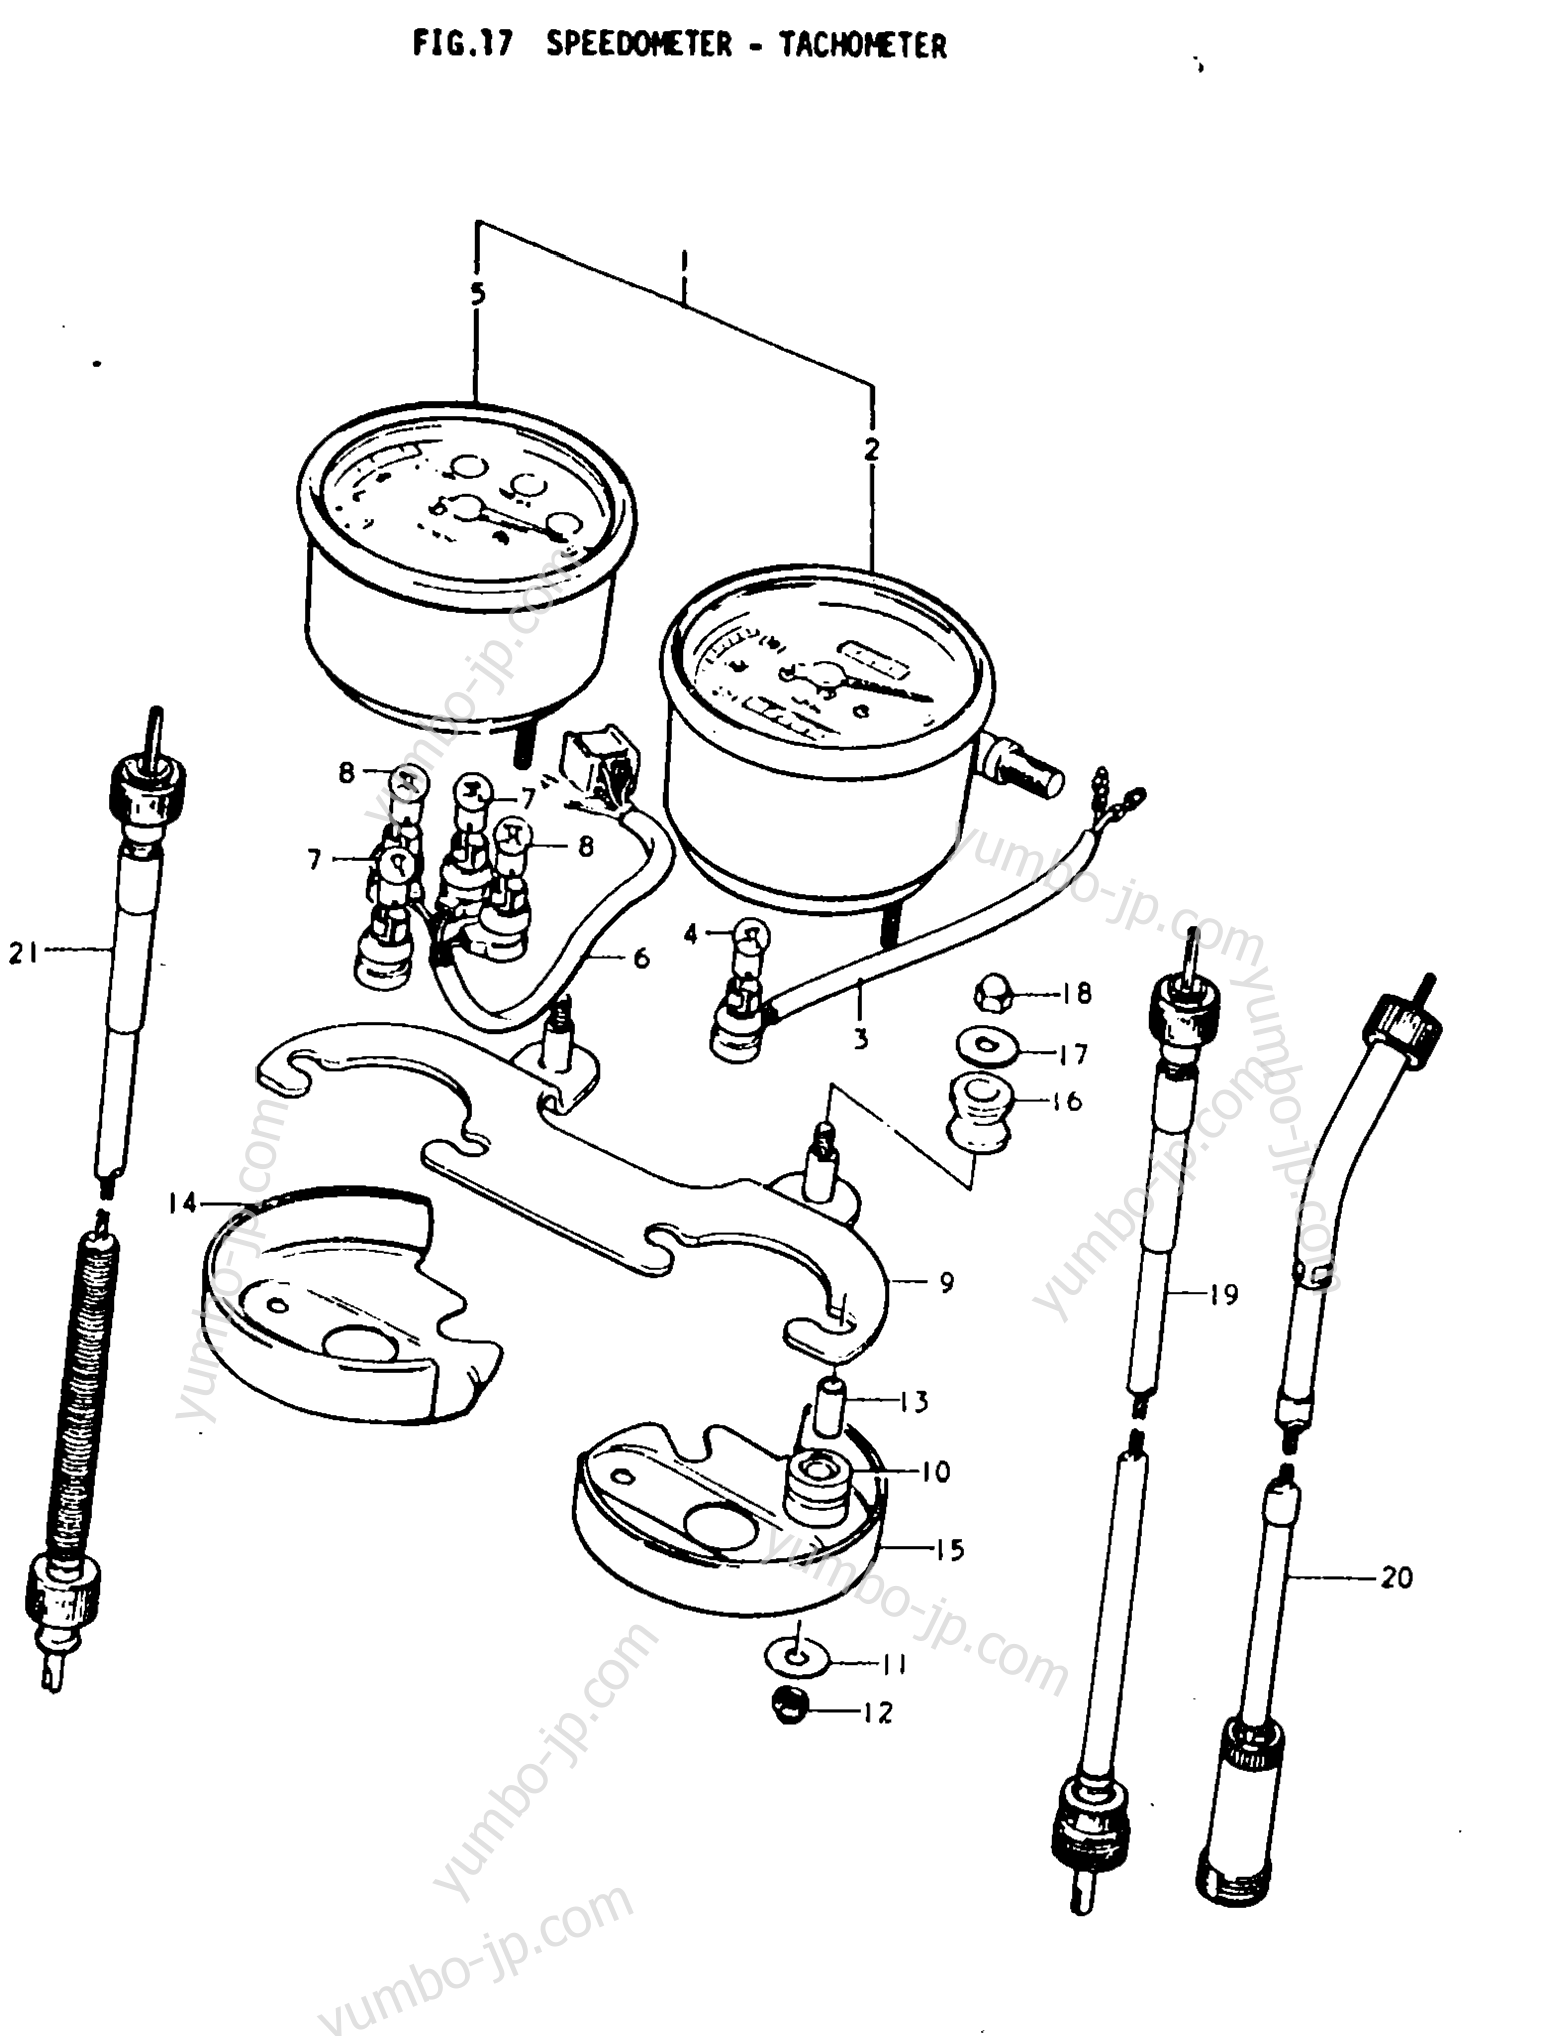 Speedometer - Tachometer for motorcycles SUZUKI TS250 1978 year